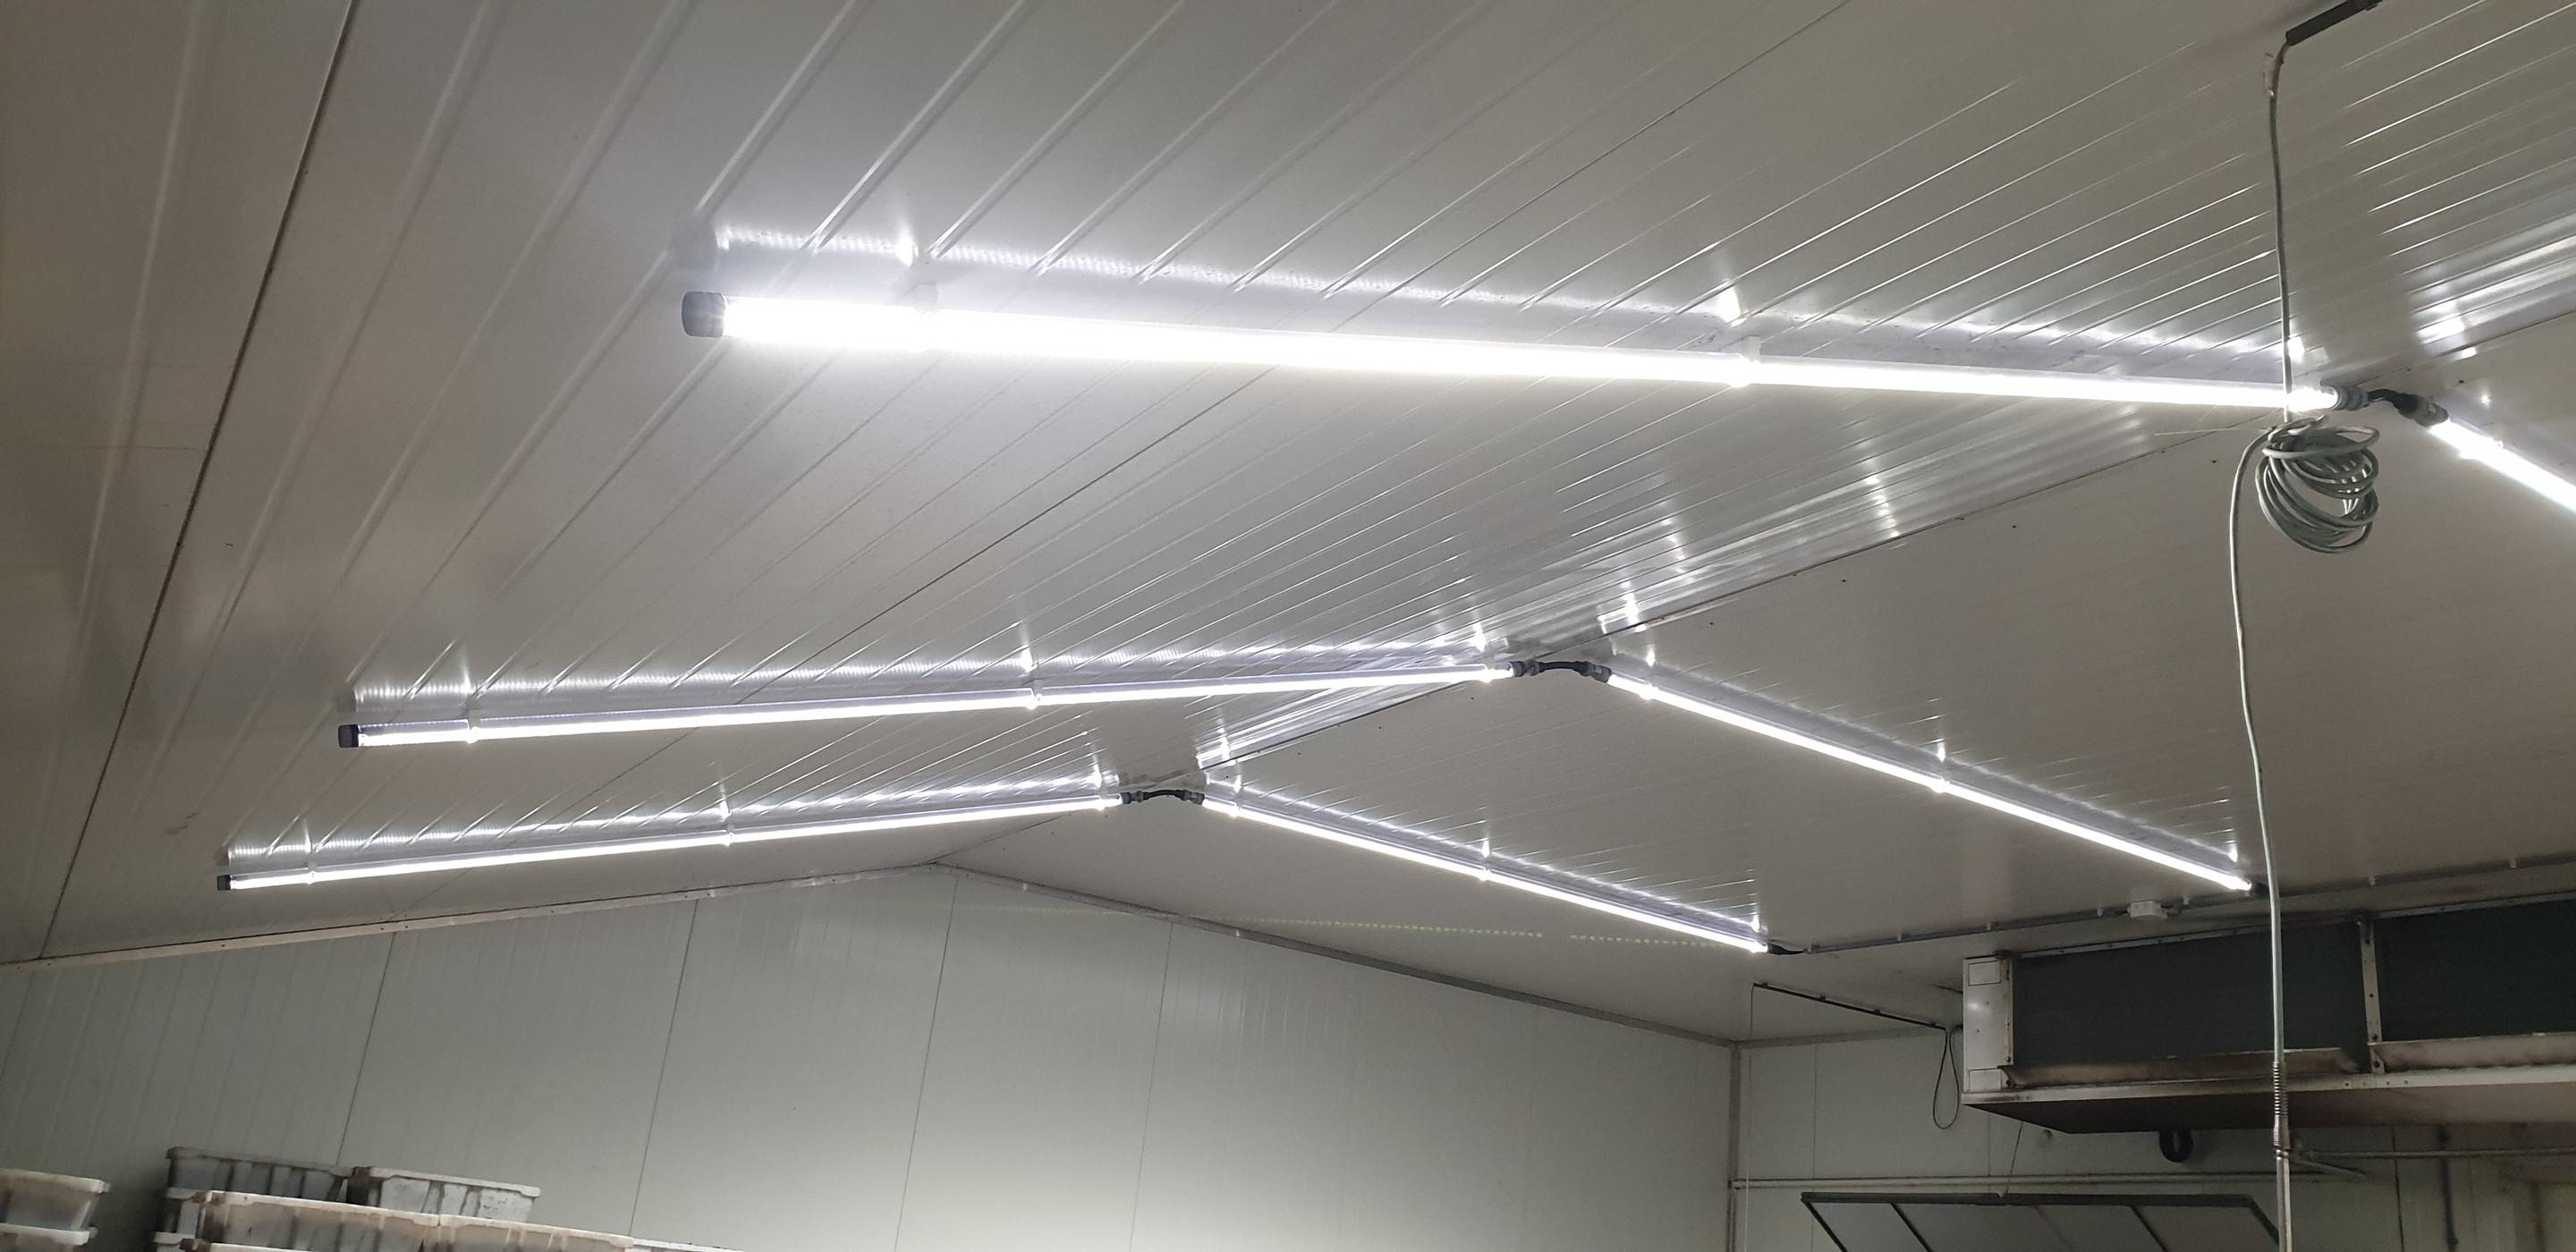 LED verlichting helpt innovatief agrarisch bedrijf energieneutraal te worden